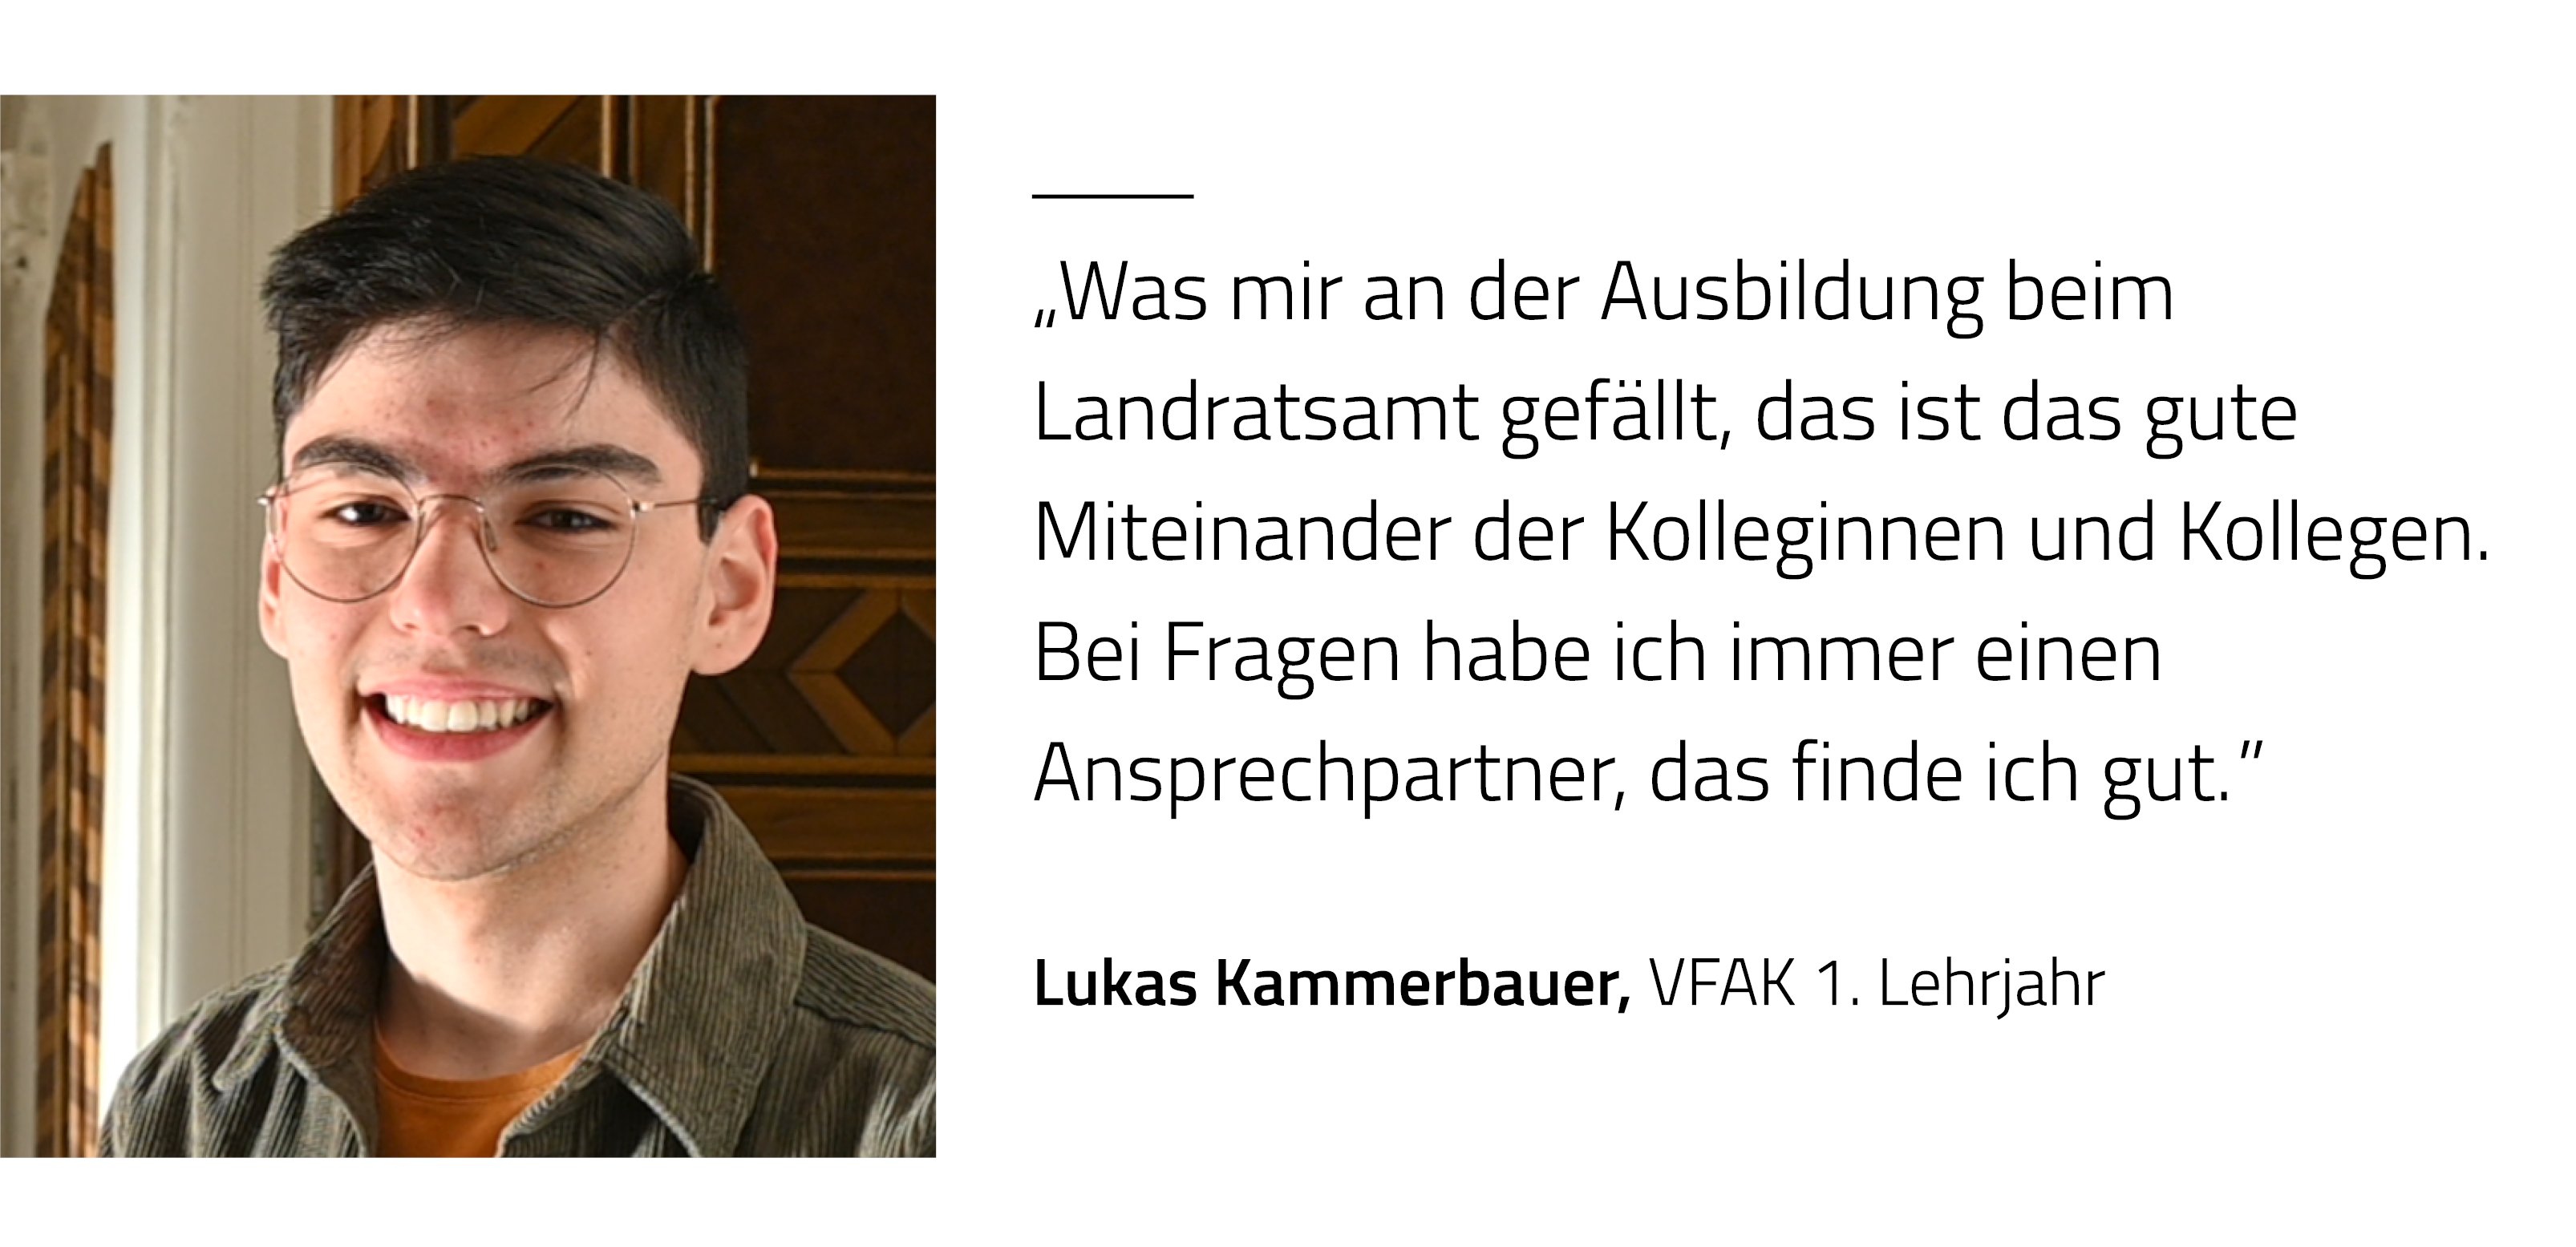 Zitat Lukas Kammerbauer, CFAK 2 Lehrjahr: Was mir an der Ausbildung beim Landratsamt gefällt, das ist das gute Miteinander der Kolleginnen und Kollegen. Bei Fragen habe ich immer einen Ansprechpartner, das finde ich gut.